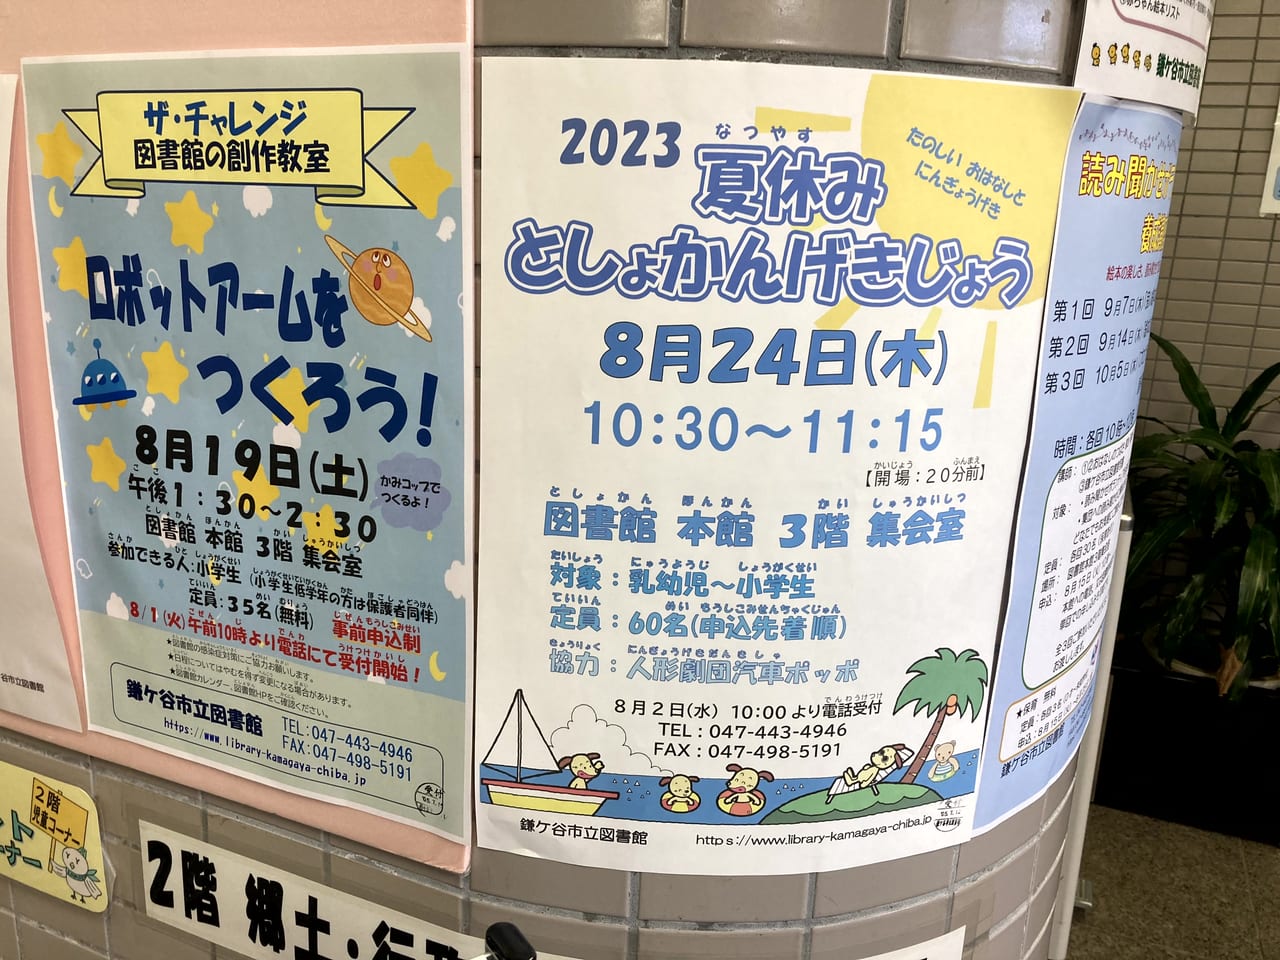 鎌ケ谷市立図書館夏休みとしょかんげきじょうのポスター